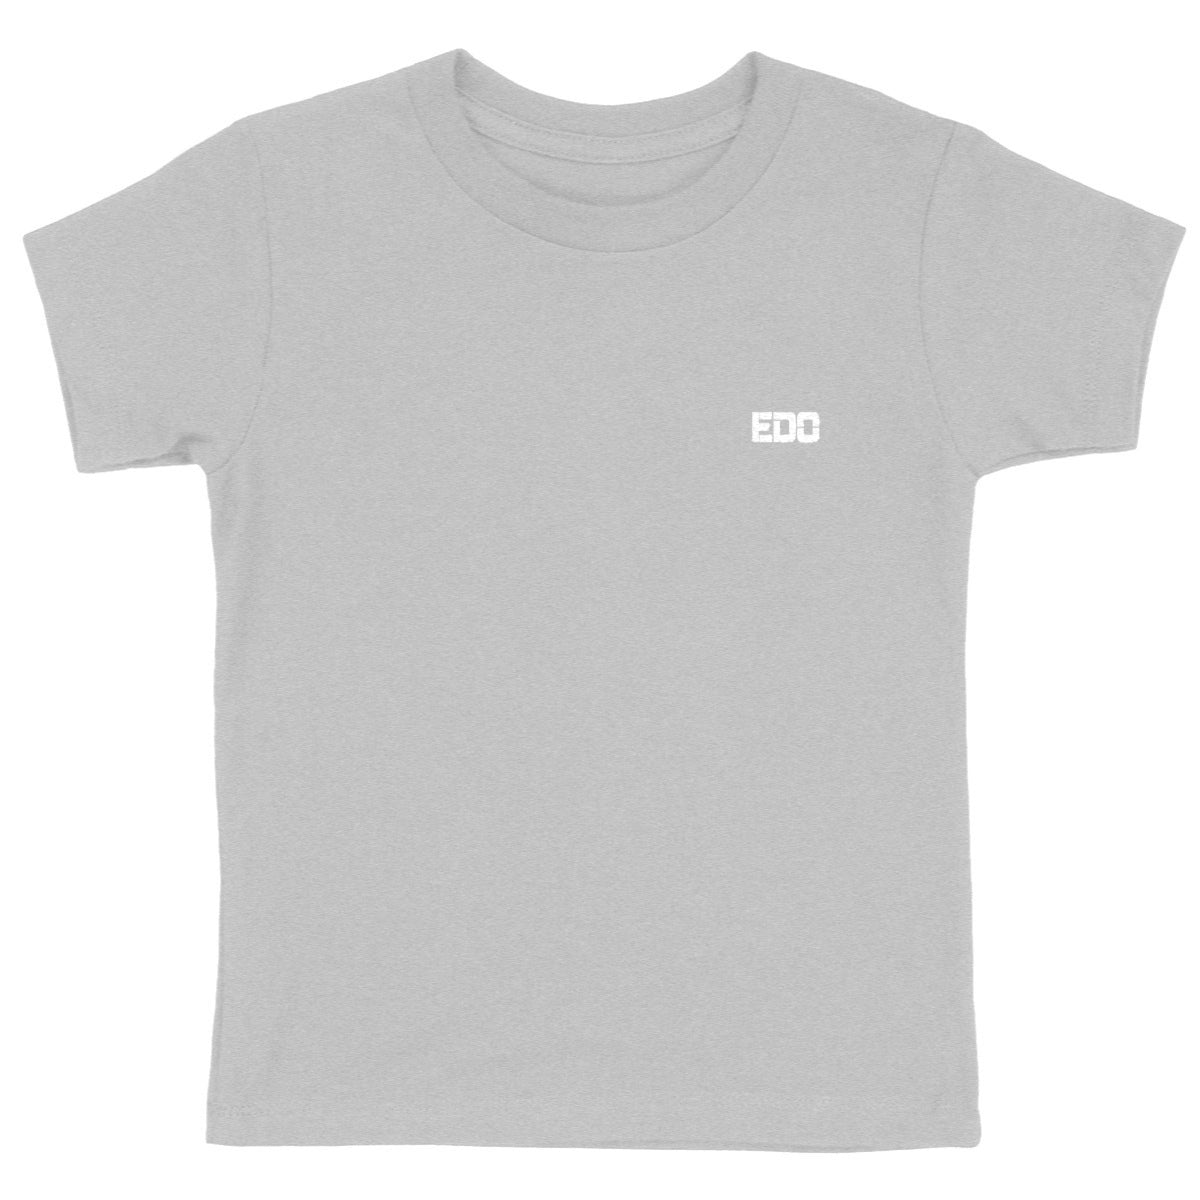 emilie t-shirt